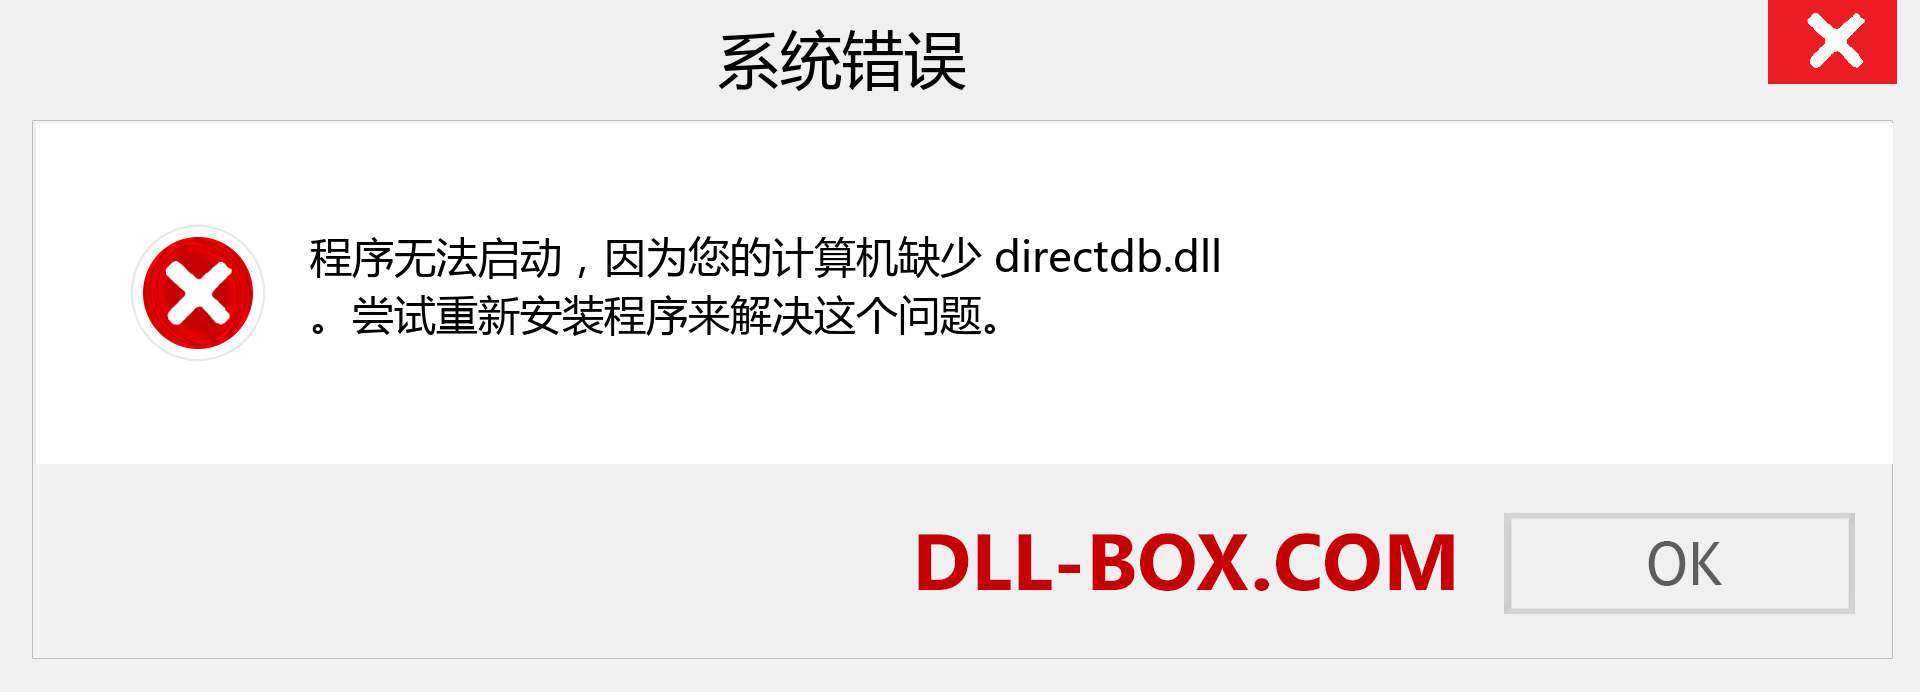 directdb.dll 文件丢失？。 适用于 Windows 7、8、10 的下载 - 修复 Windows、照片、图像上的 directdb dll 丢失错误